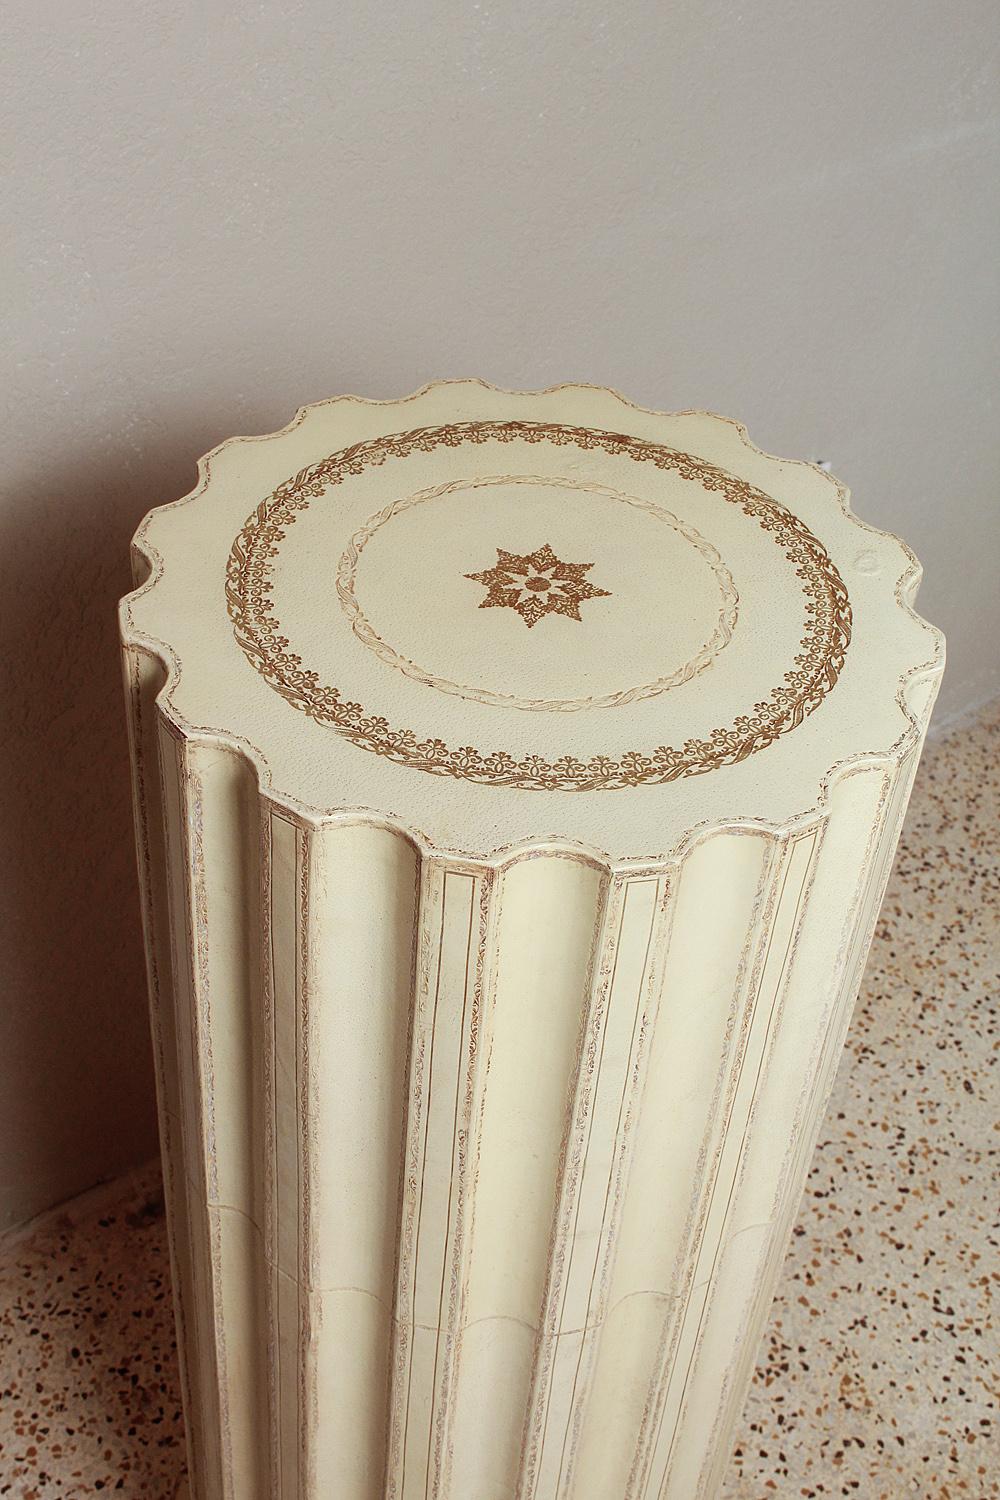 Elégant et classique, le piédestal en cuir glacé de style Florentine de Maitland-Smith est de couleur crème avec des détails en relief dorés. Une belle déclaration dans un cadre traditionnel ou moderne.

